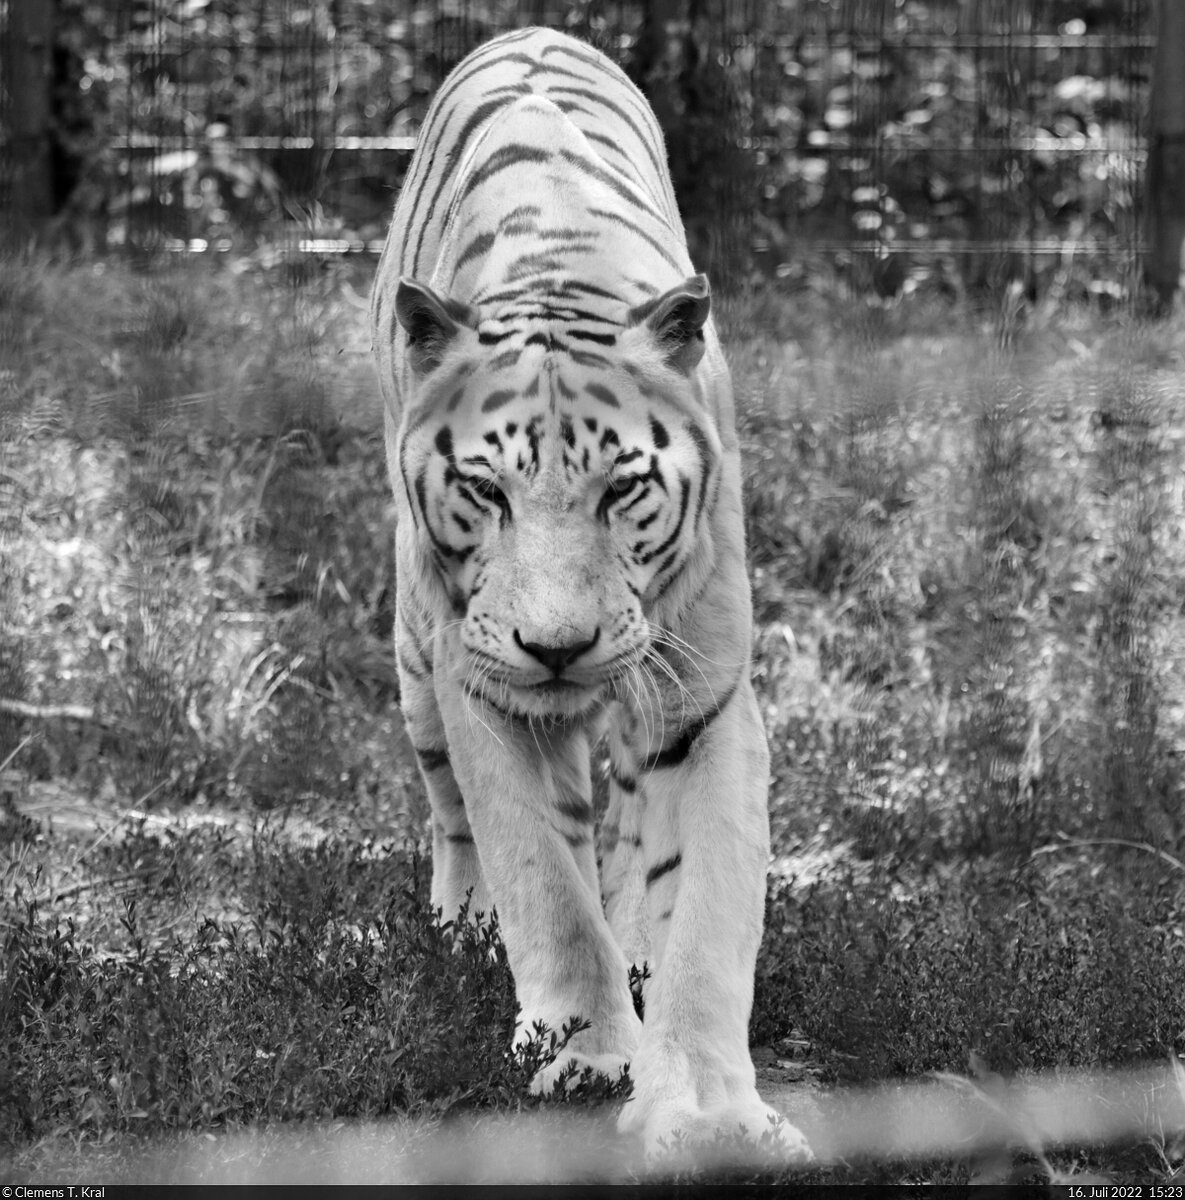 Trauer um Tigermännchen Karim: Am 20.9.2022 hat der Zoo Aschersleben seinen letzten weißen Tiger verloren. Nachdem es ihm in den letzten Tagen merklich schlechter ging, musste er nach Beratungen der Zoomitarbeiter eingeschläfert werden, um ihm weitere Leiden zu ersparen.
Damit geht eine Ära zu Ende. Seit 2006 waren die Weißen Tiger das Aushängeschild des Zoos. Vor zwei Monaten hatte ich Karim nach langer Zeit noch einmal besucht. Bereits da war er nicht mehr fit auf den Beinen. Mach's gut, Großer.

🕓 16.7.2022 | 15:23 Uhr